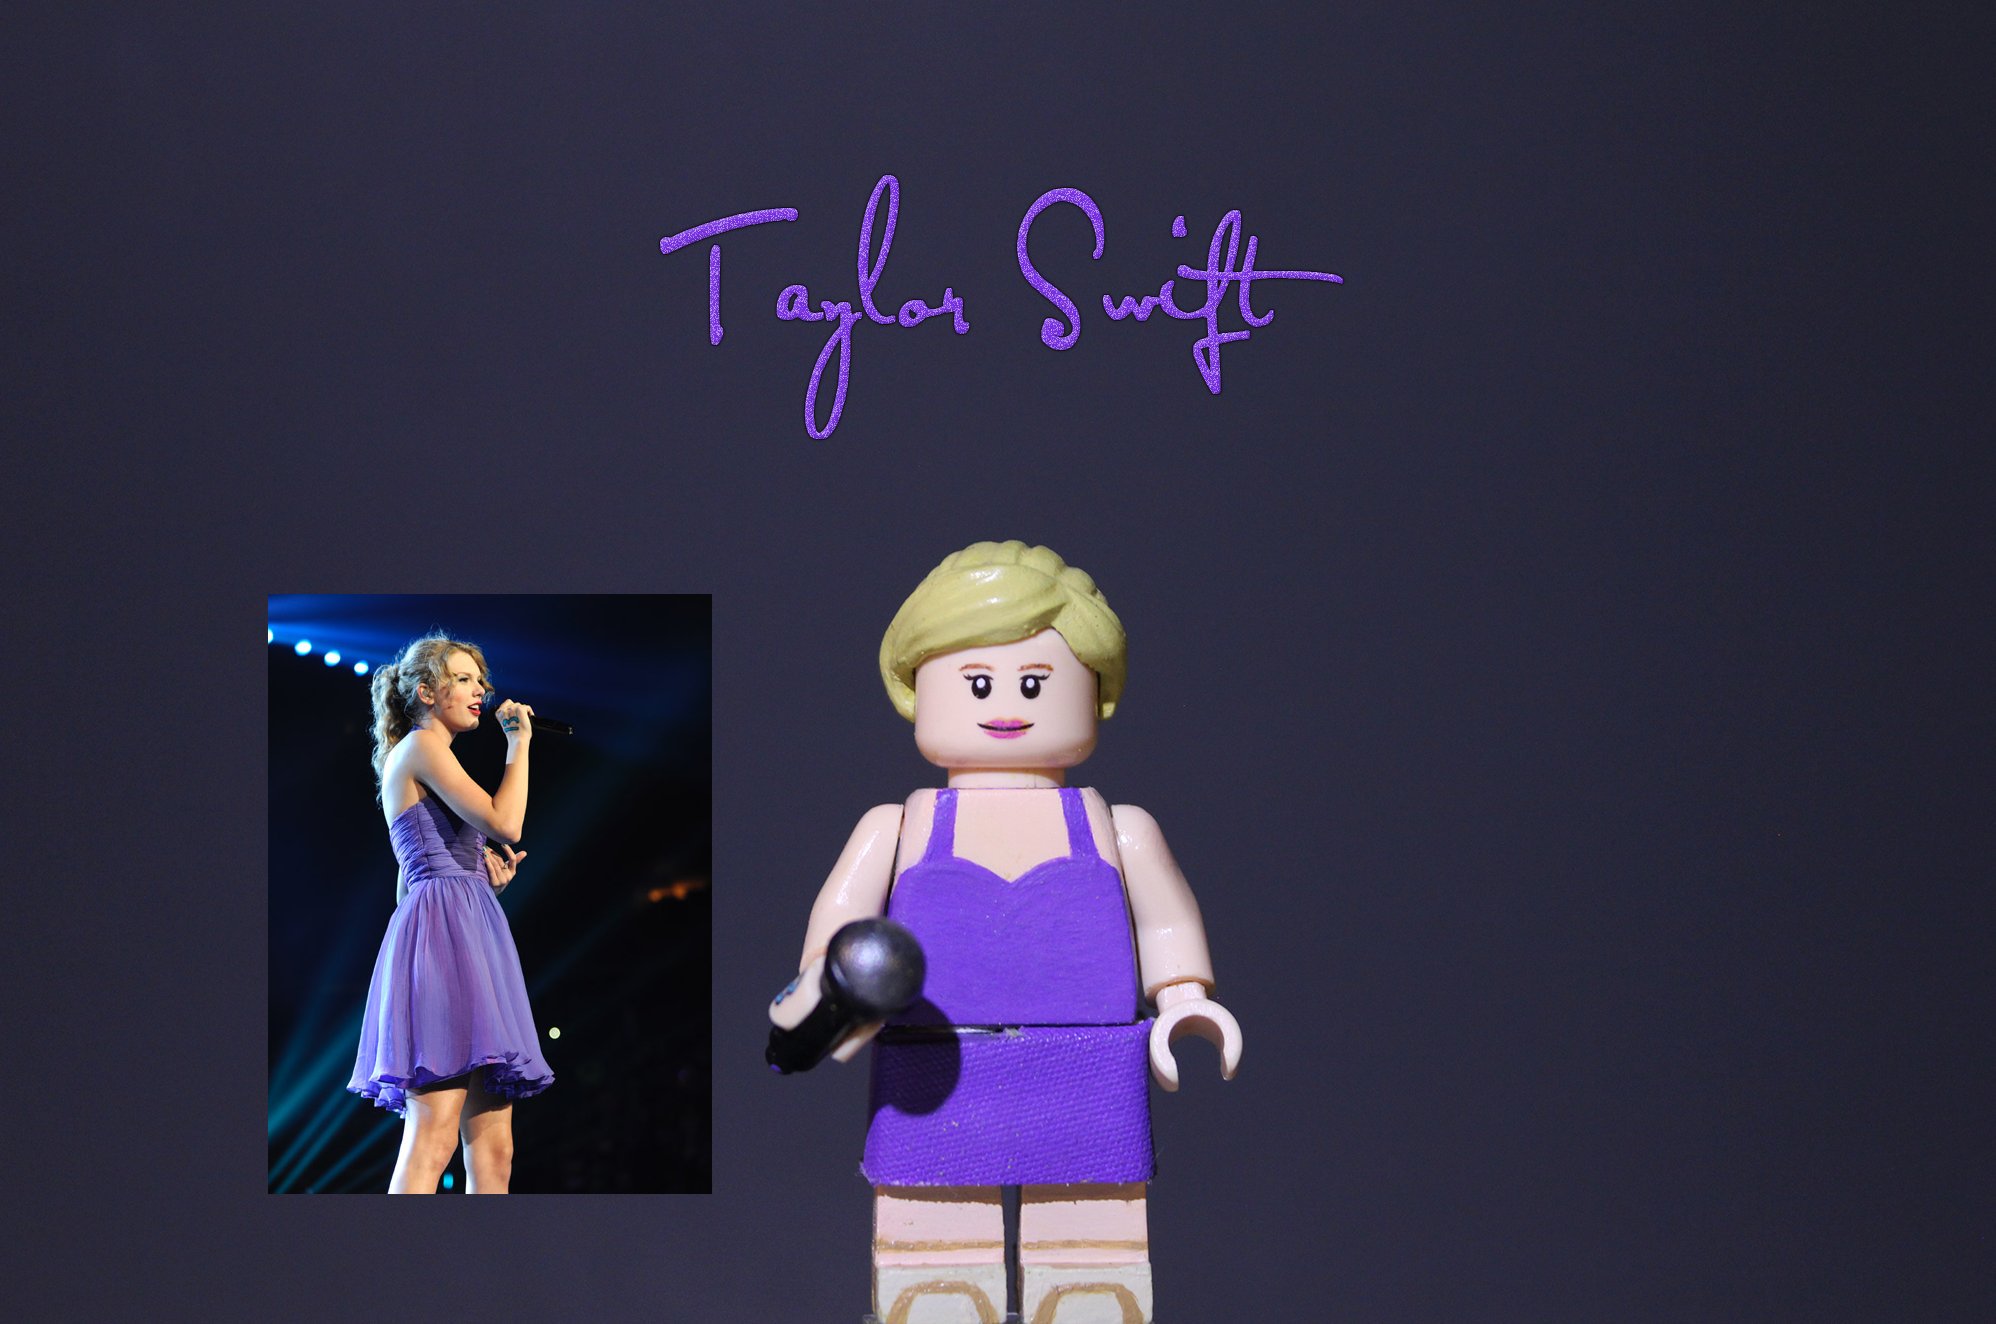 Justinn on X: Taylor Swift - - - @taylorswift13 #lego